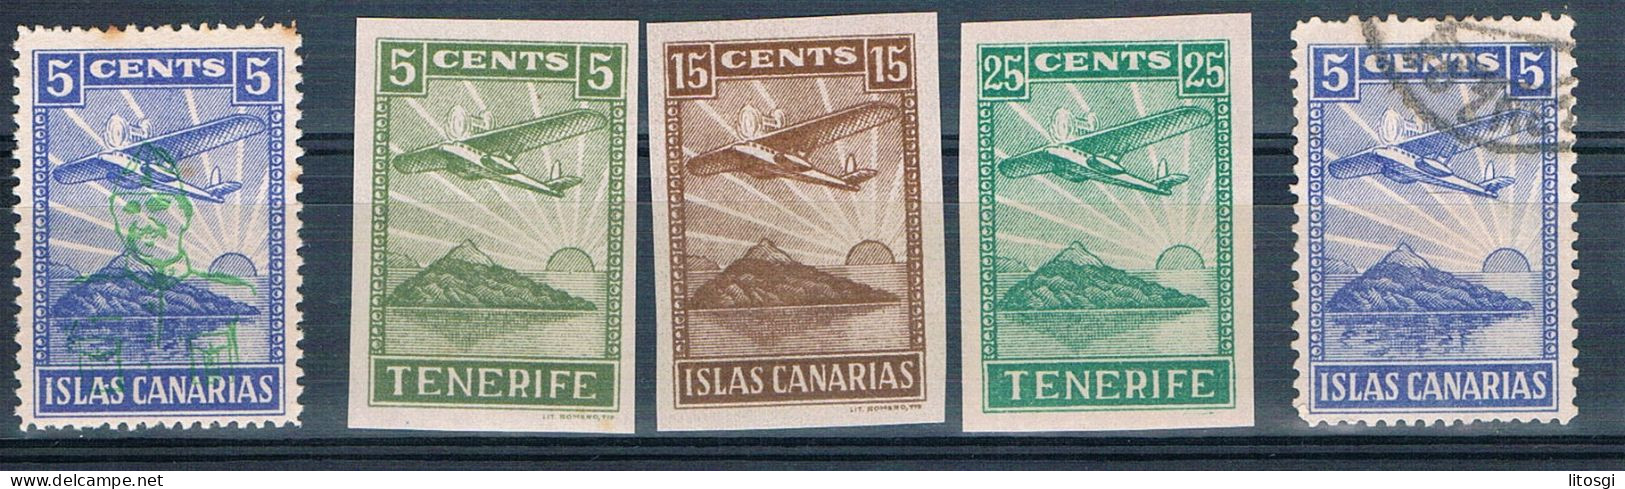 ESPAÑA 1939 ISLAS CANARIAS TENERIFE VER FOTOGRAFÍAS MUY BUENA SEGUNDA FOTO - Spanish Civil War Labels